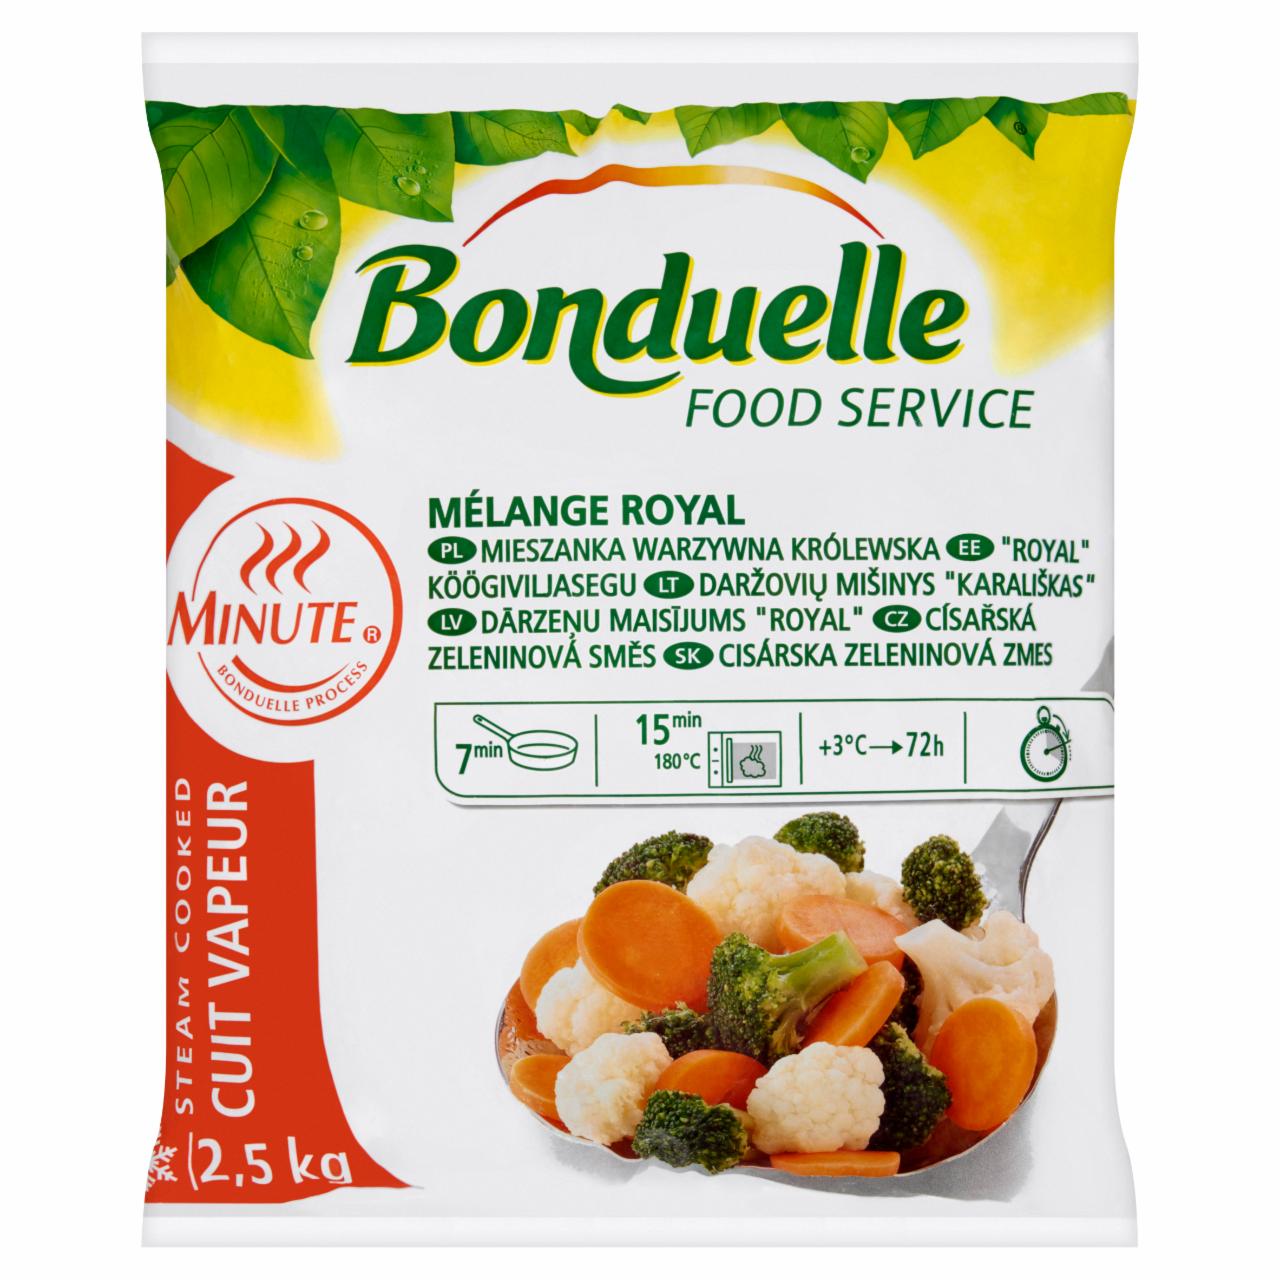 Képek - Bonduelle Food Service Minute Mélange Royal gyorsfagyasztott zöldségkeverék 2,5 kg